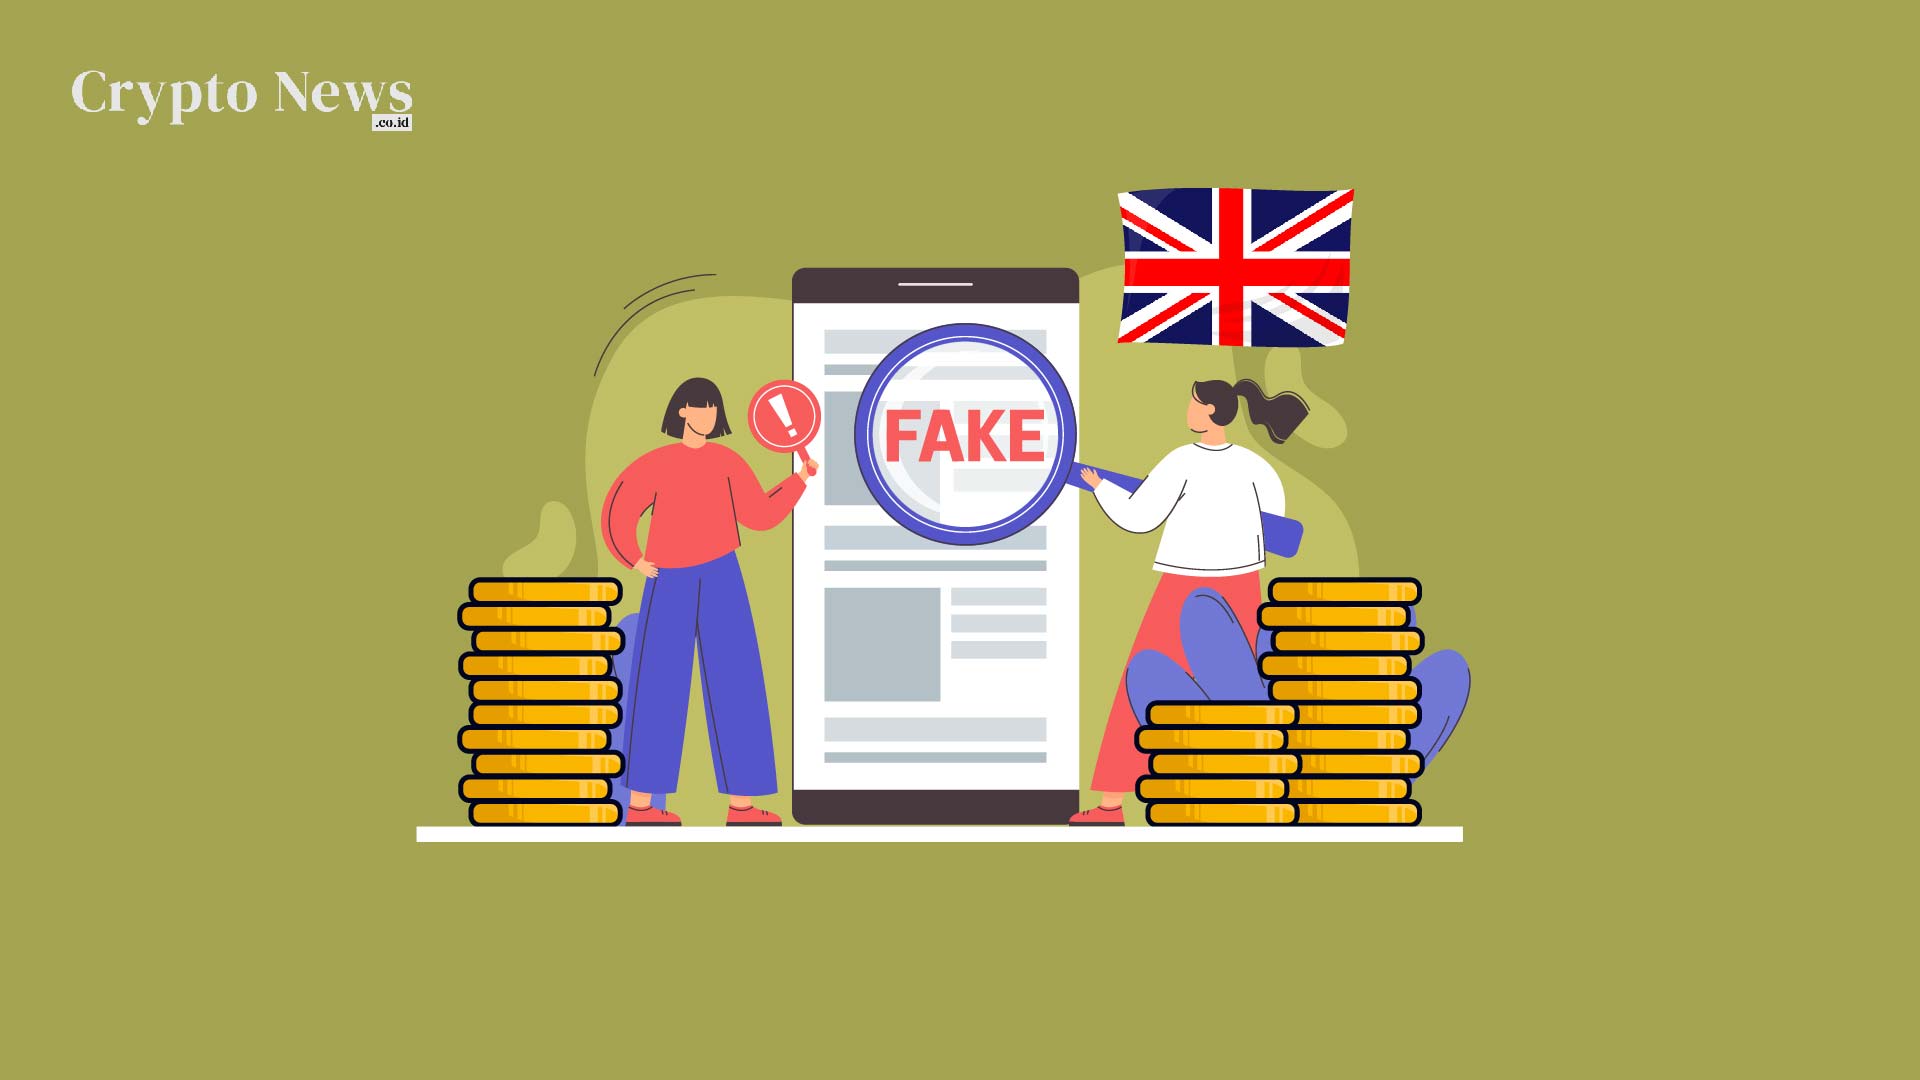 Illust : Inggris akan Menegakkan Peraturan Tegas terhadap Iklan Cryptocurrency yang Menyesatkan